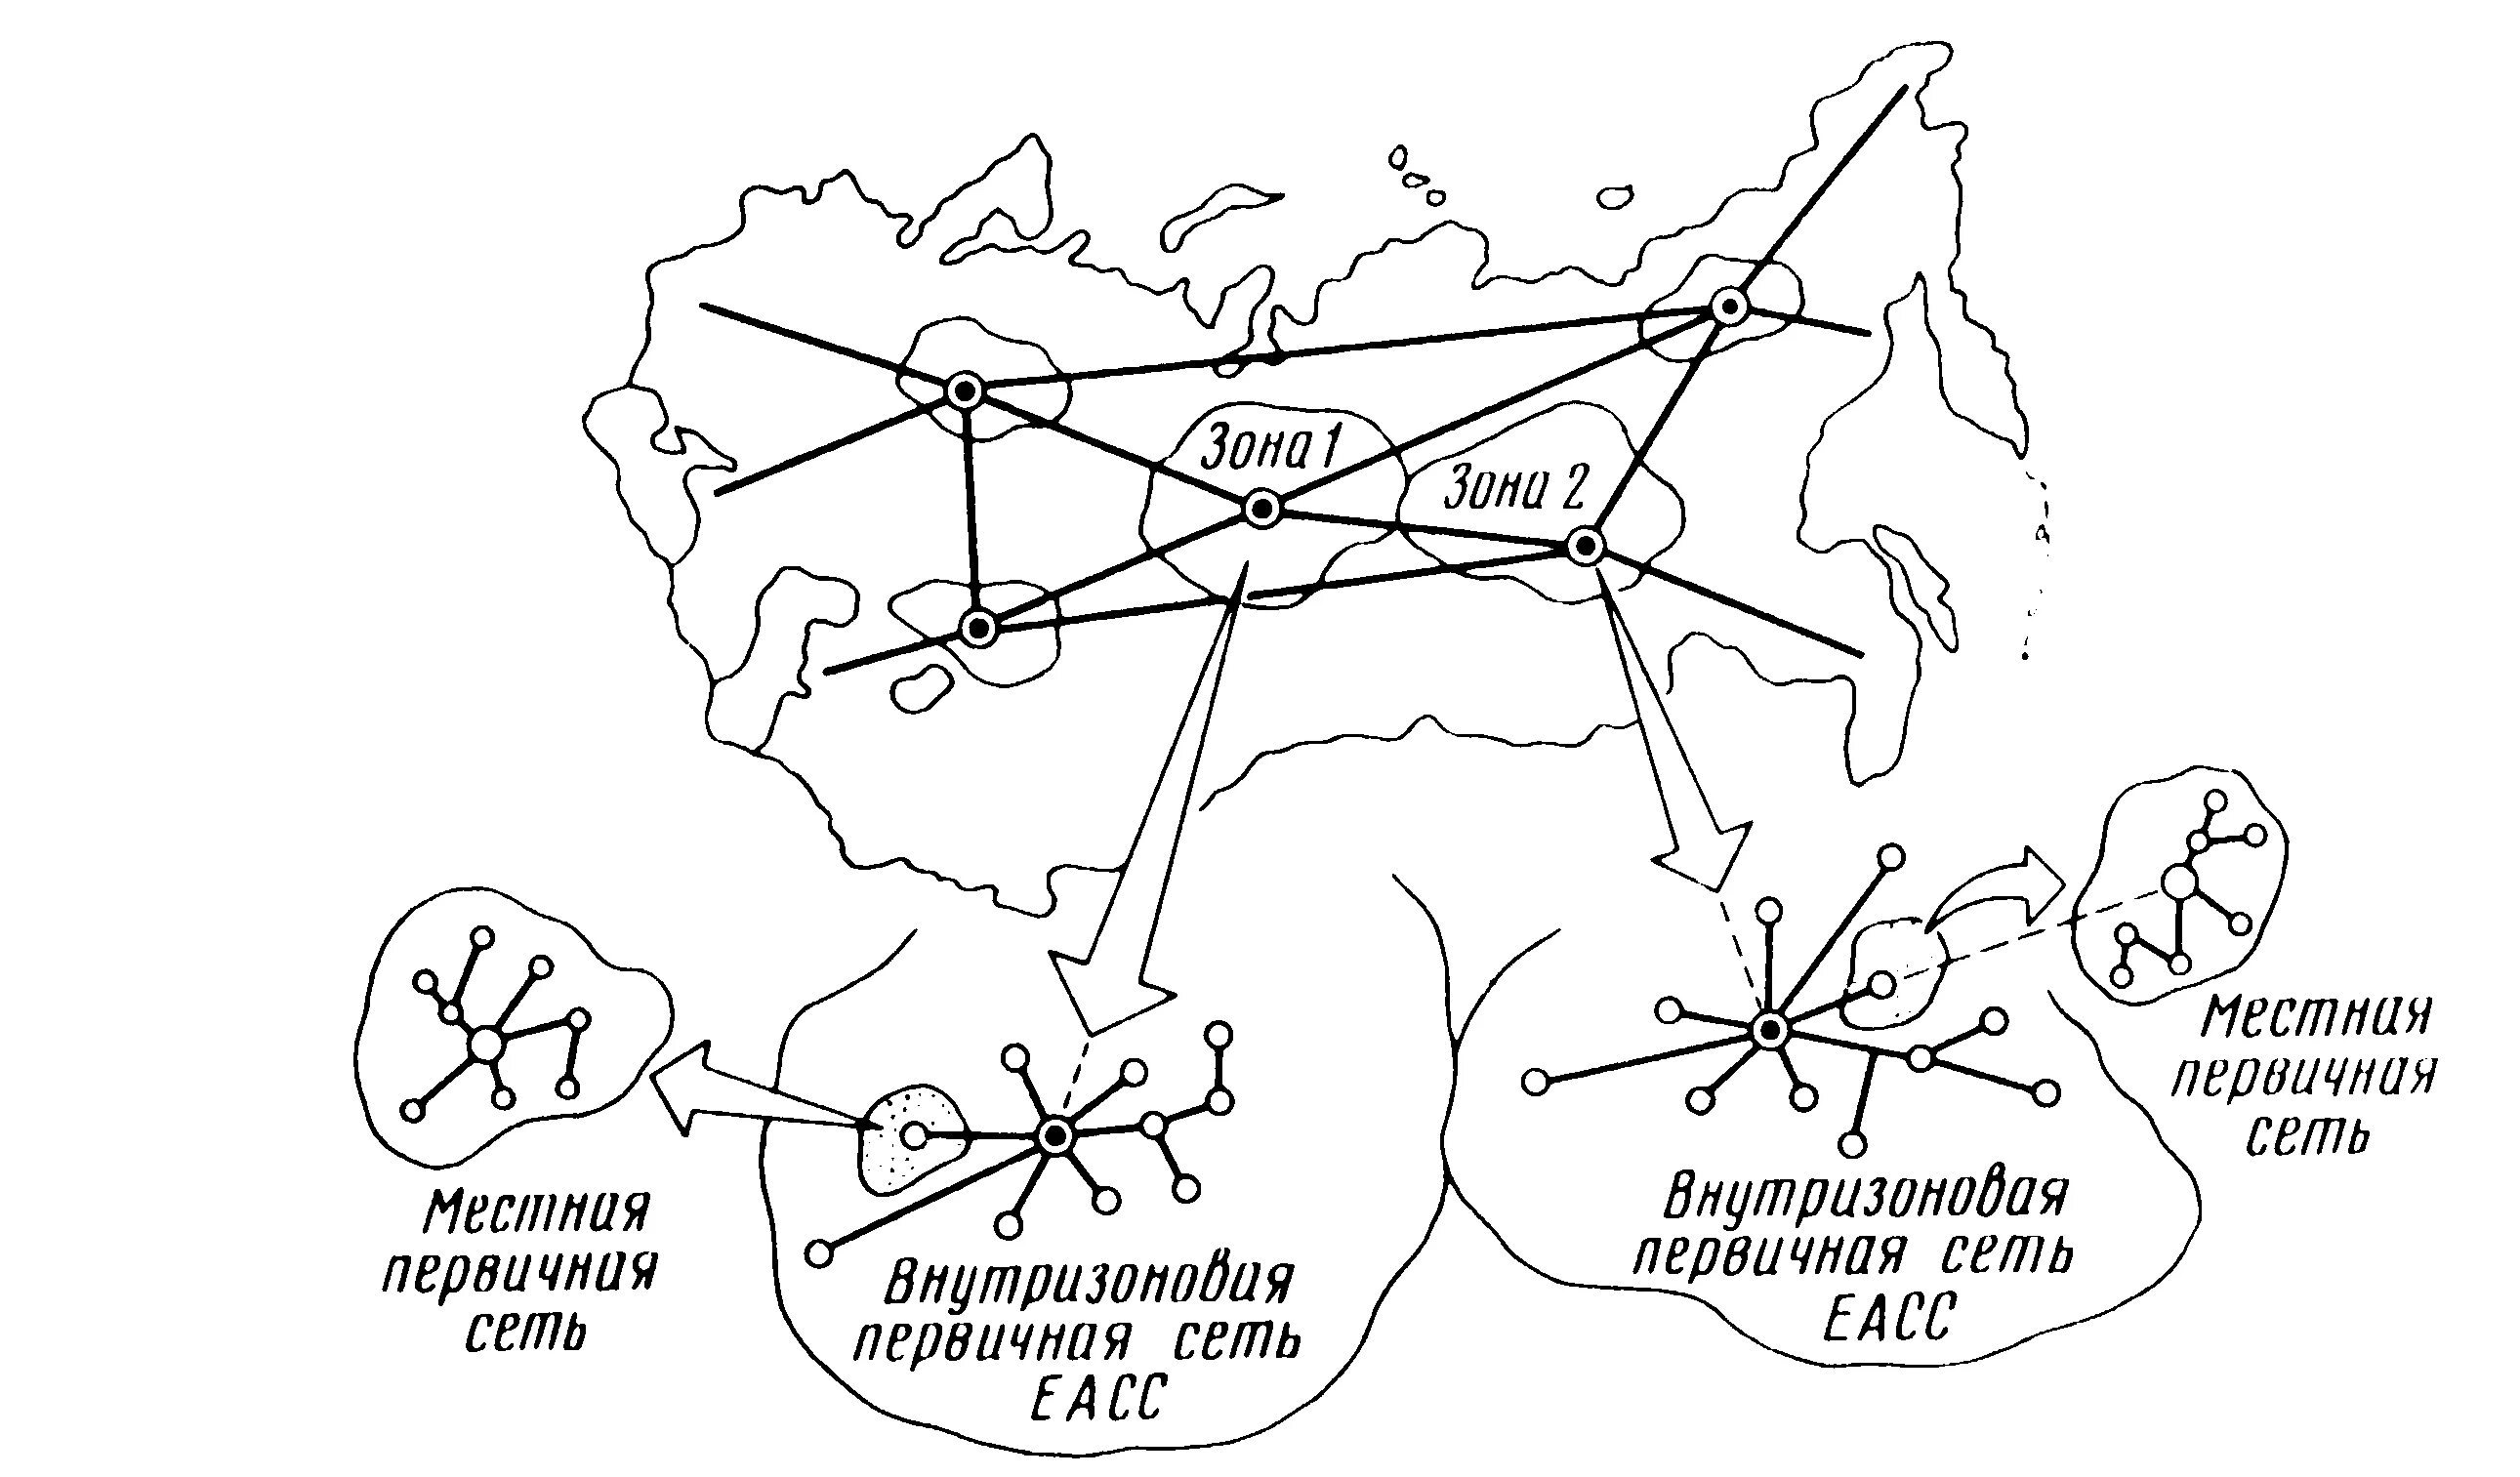 Транспортная сеть связи. Схема первичной сети связи. Взаимоувязанные сети связи РФ состав. Структура взаимоувязанной сети связи. Структурная схема первичной сети связи.